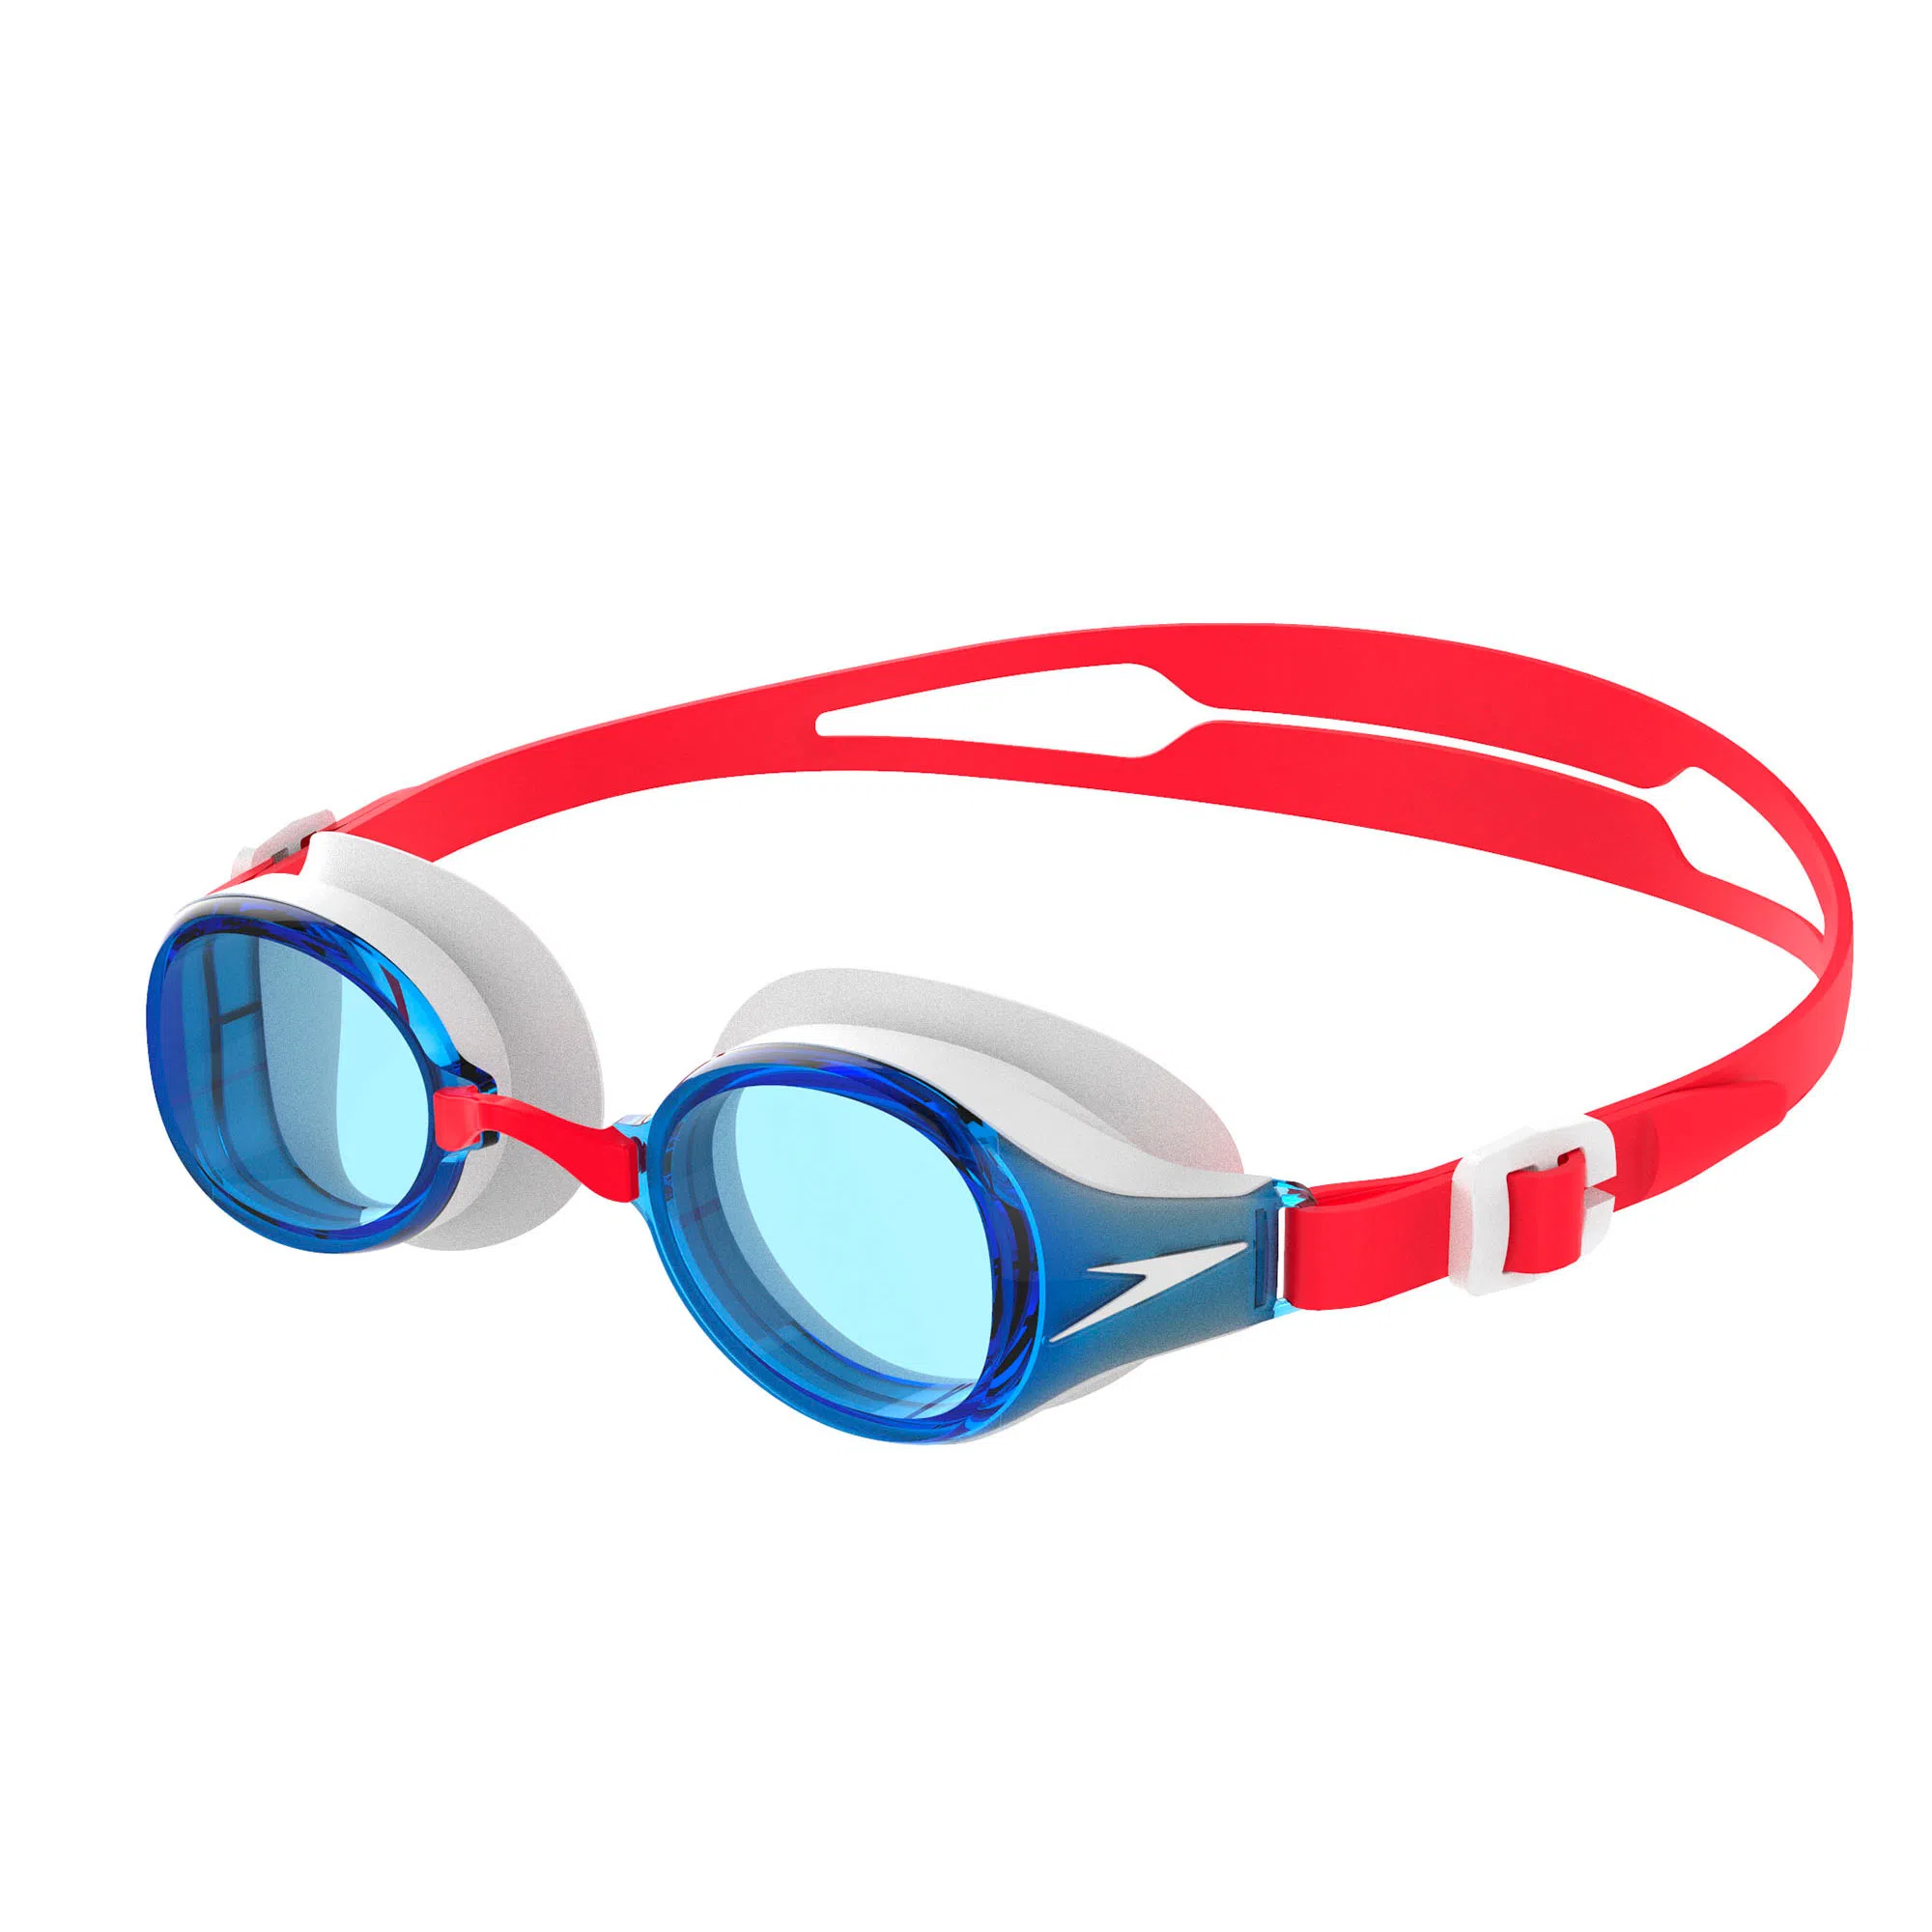 Gafas De Natación Hydropure Jr. Red/Blue Speedo - Mundo Deportivo